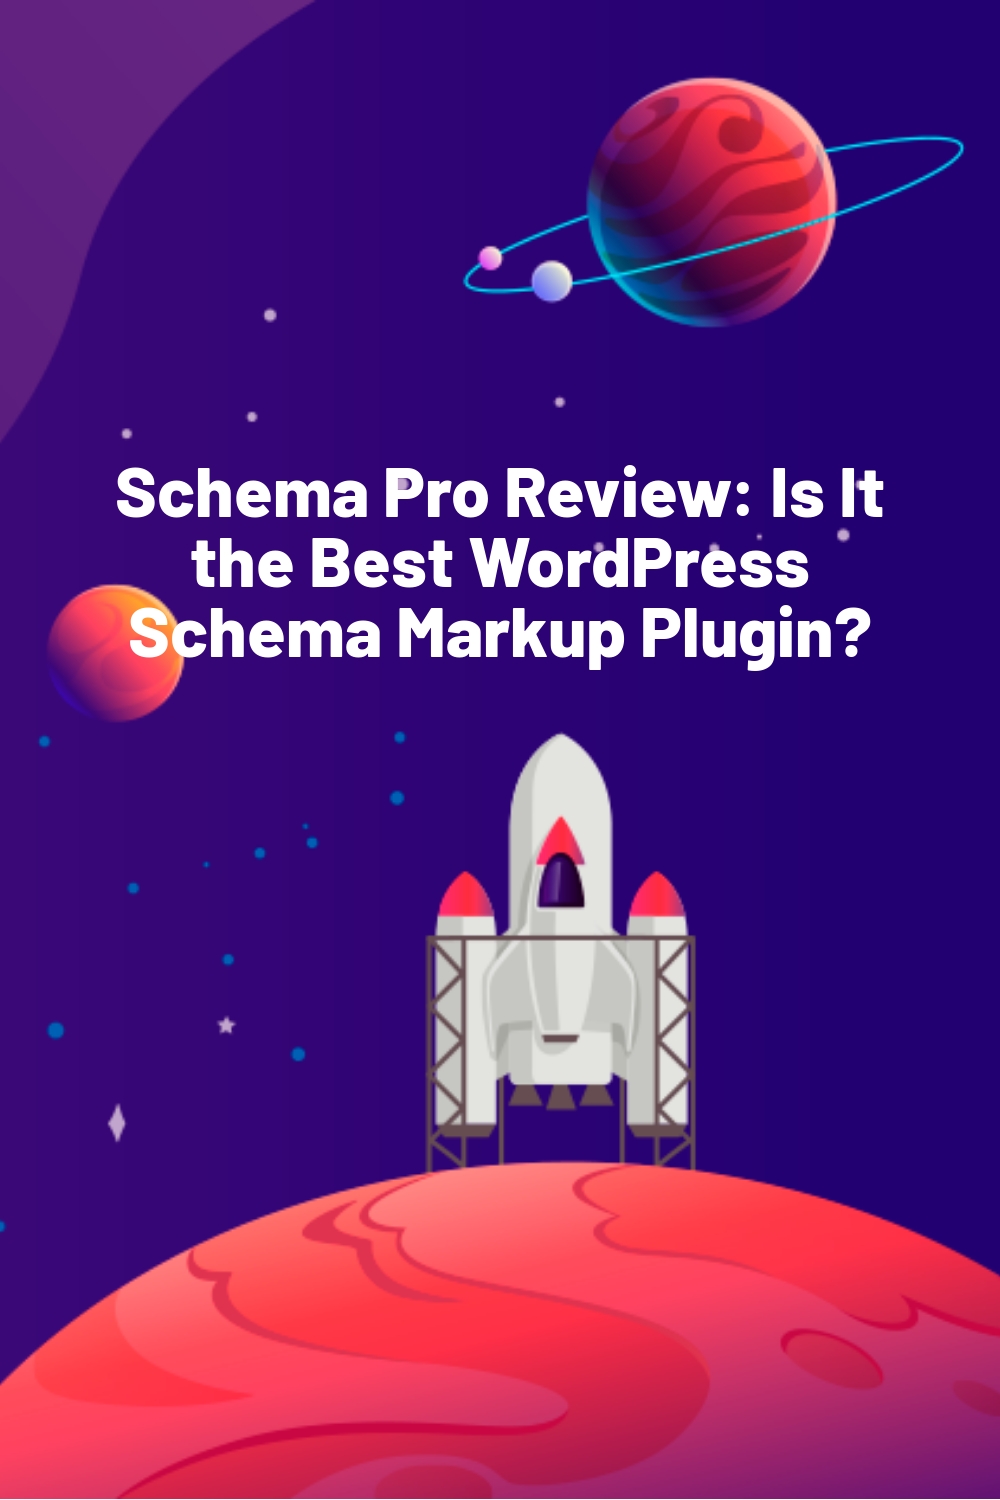 Schema Pro Review: Is It the Best WordPress Schema Markup Plugin?